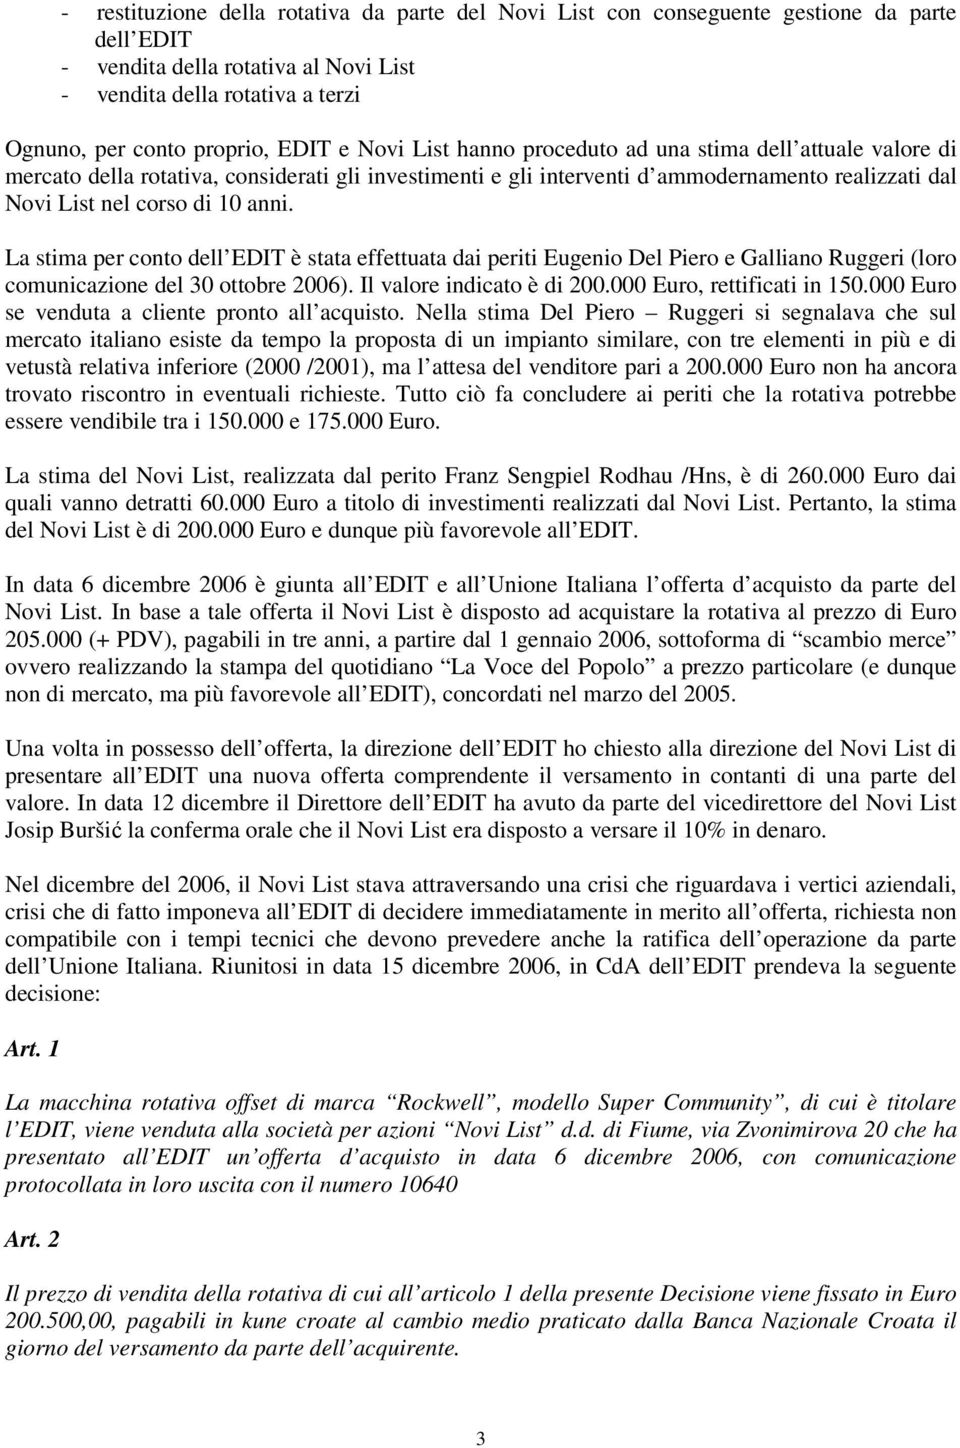 La stima per conto dell EDIT è stata effettuata dai periti Eugenio Del Piero e Galliano Ruggeri (loro comunicazione del 30 ottobre 2006). Il valore indicato è di 200.000 Euro, rettificati in 150.